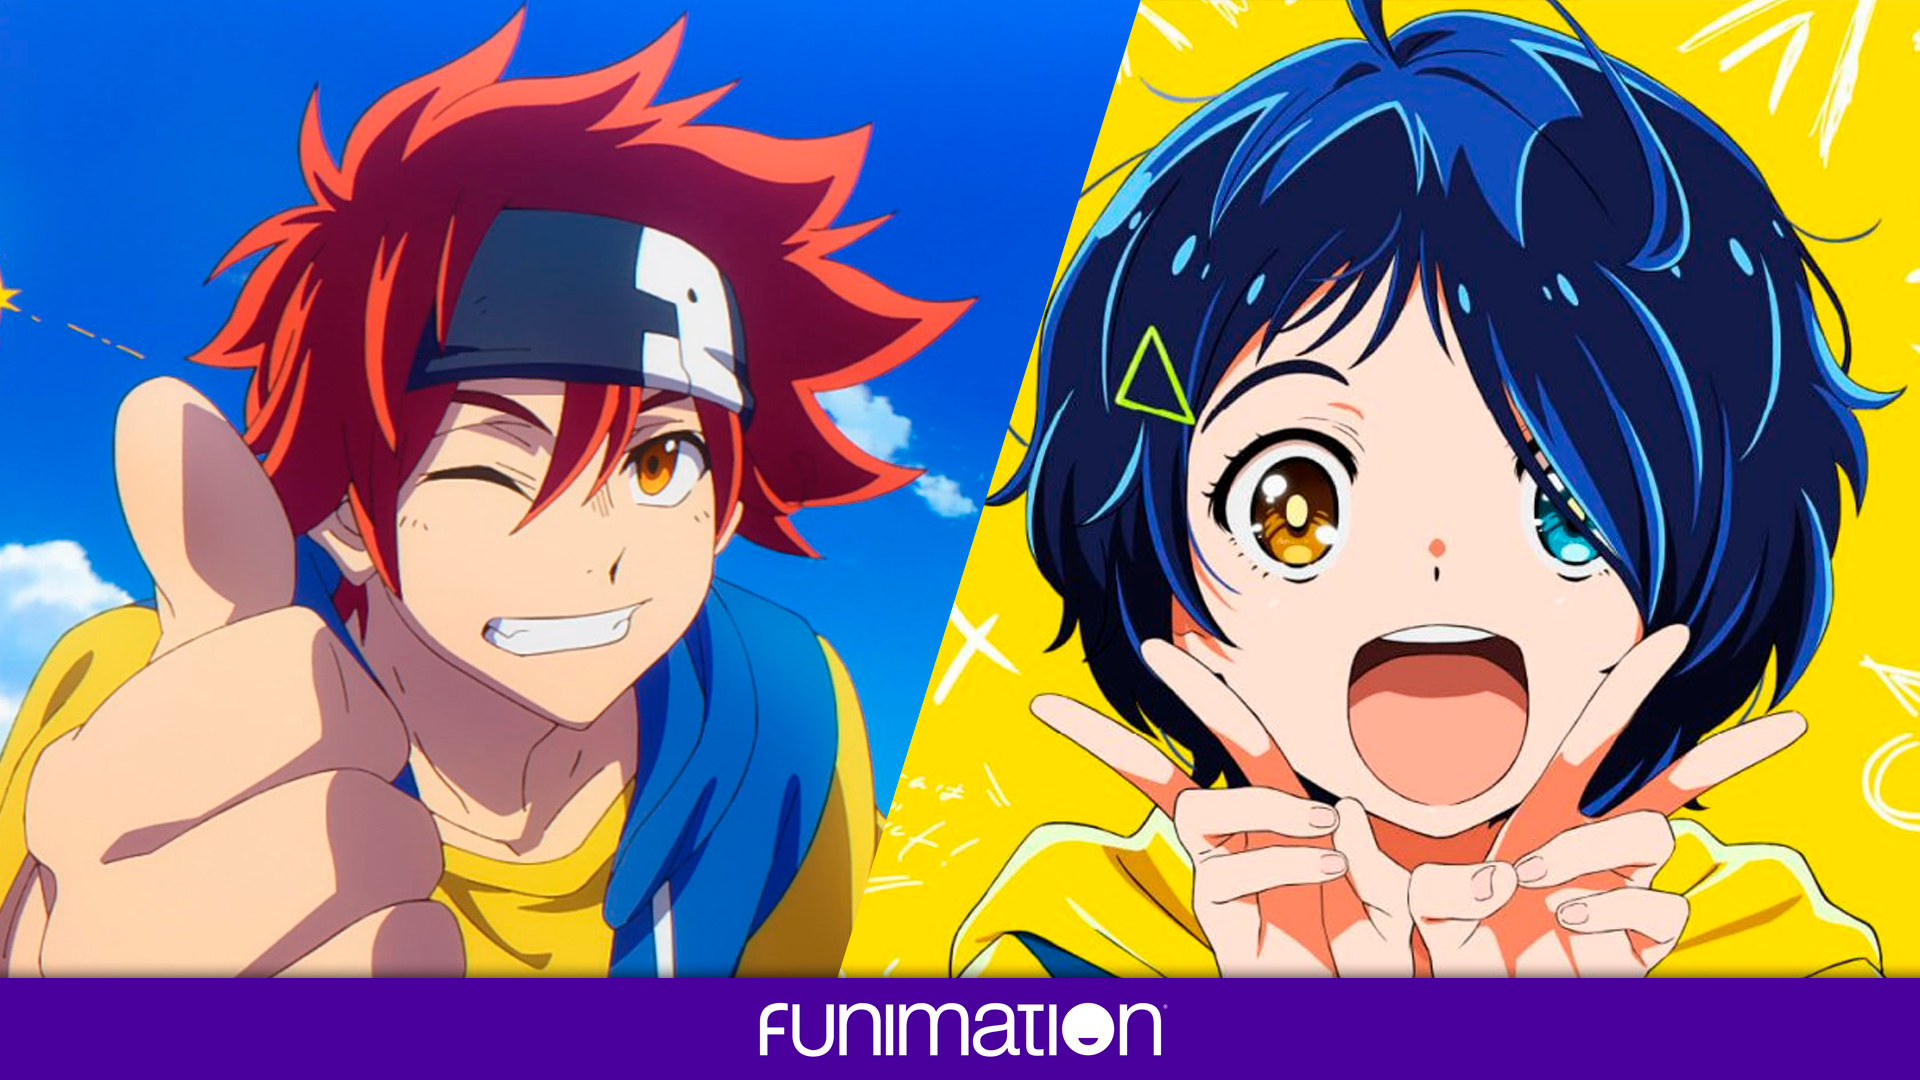  Funimation estreia novos animes dublados